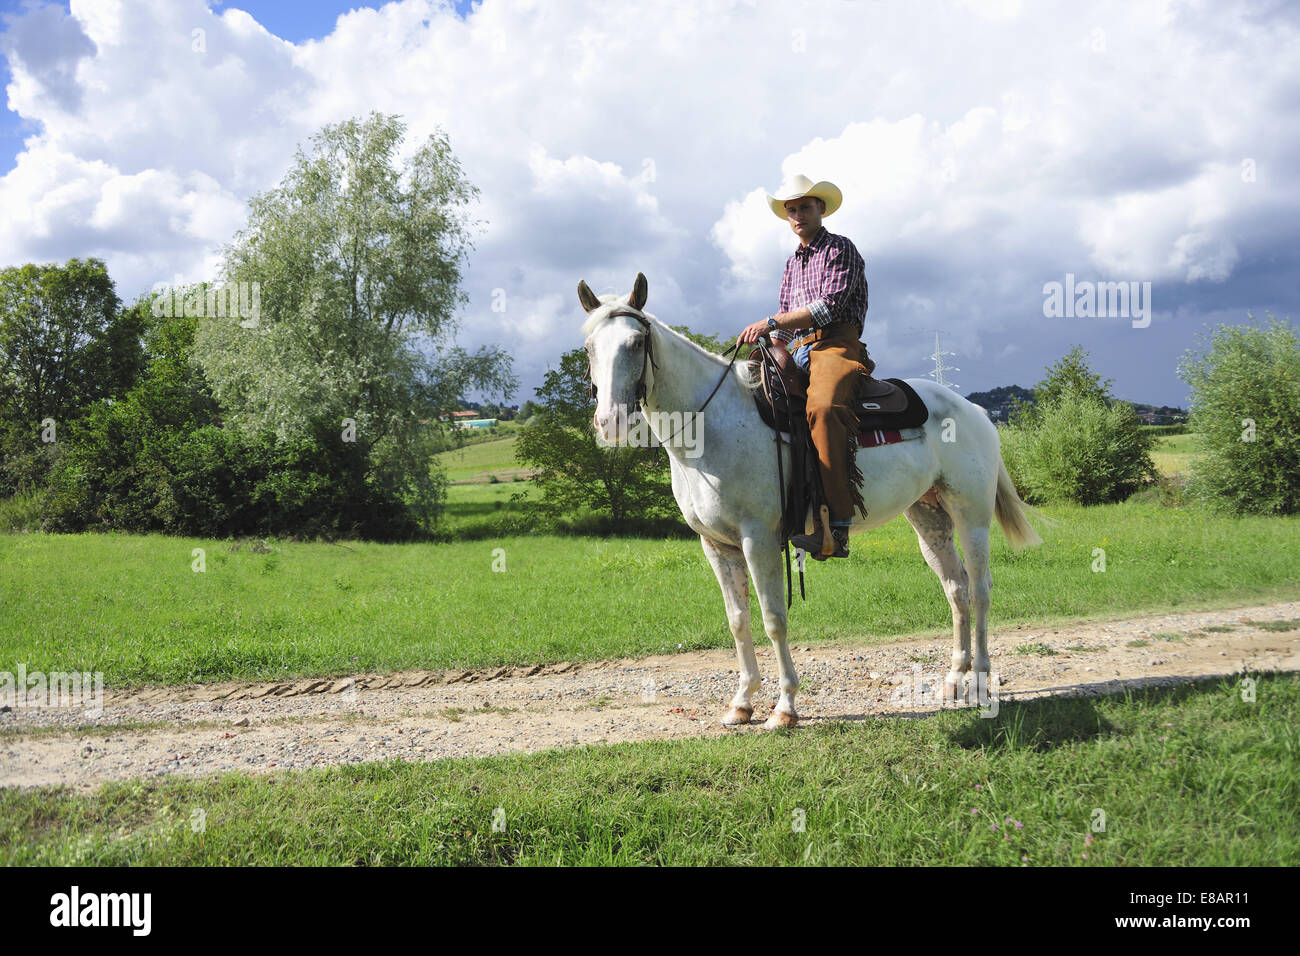 Portrait de jeune homme en habit du cowboy à cheval sur un chemin de terre Banque D'Images